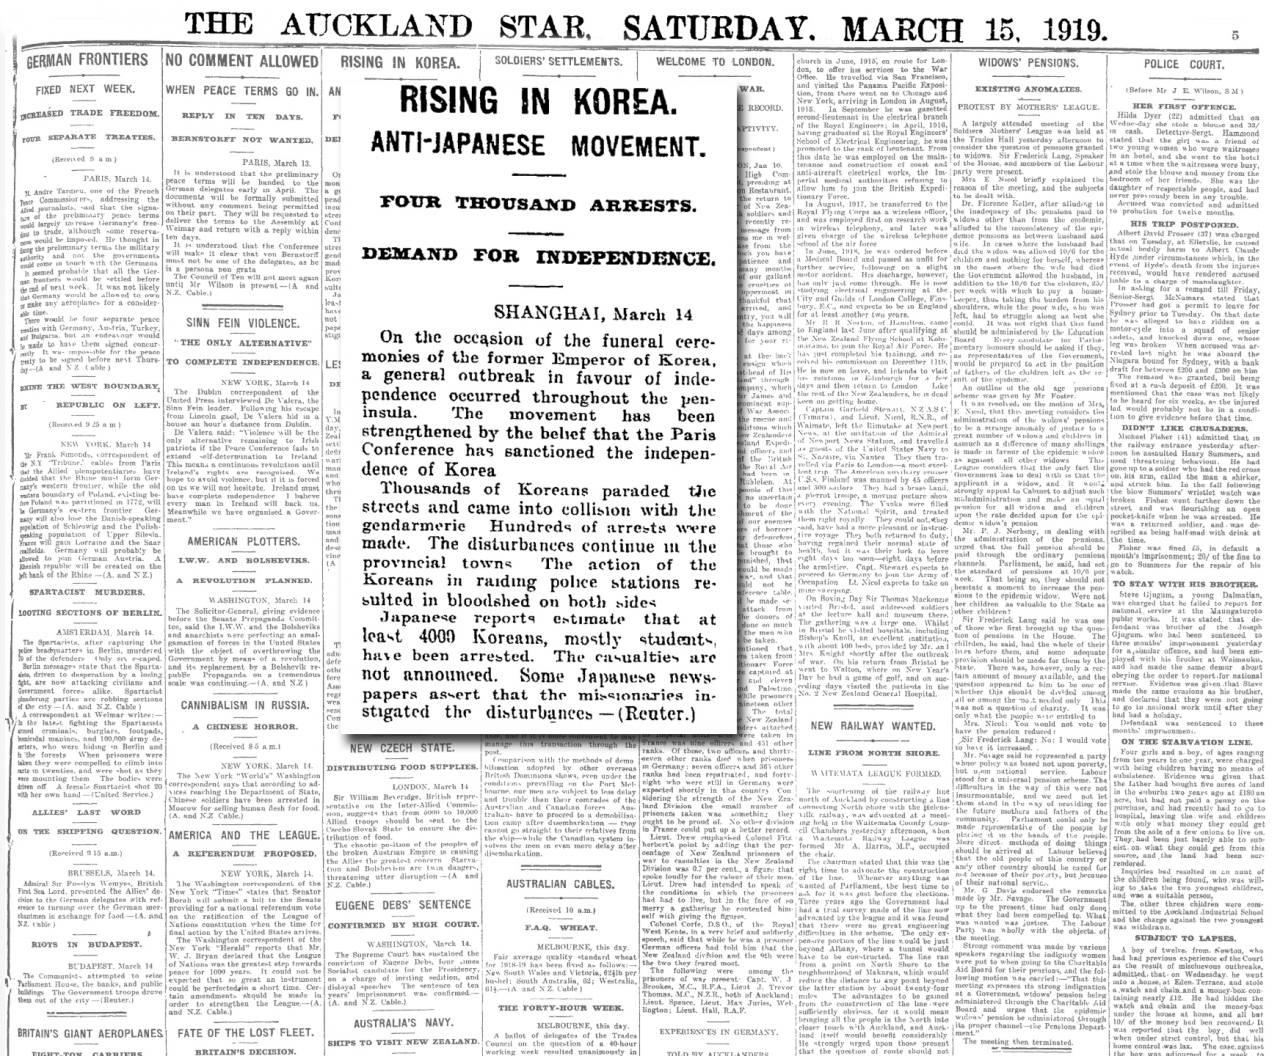 1919년 3월15일 오클랜드 스타지는 'Rising in KOREA'라는 제목으로 3.1운동 소식을 전했다.